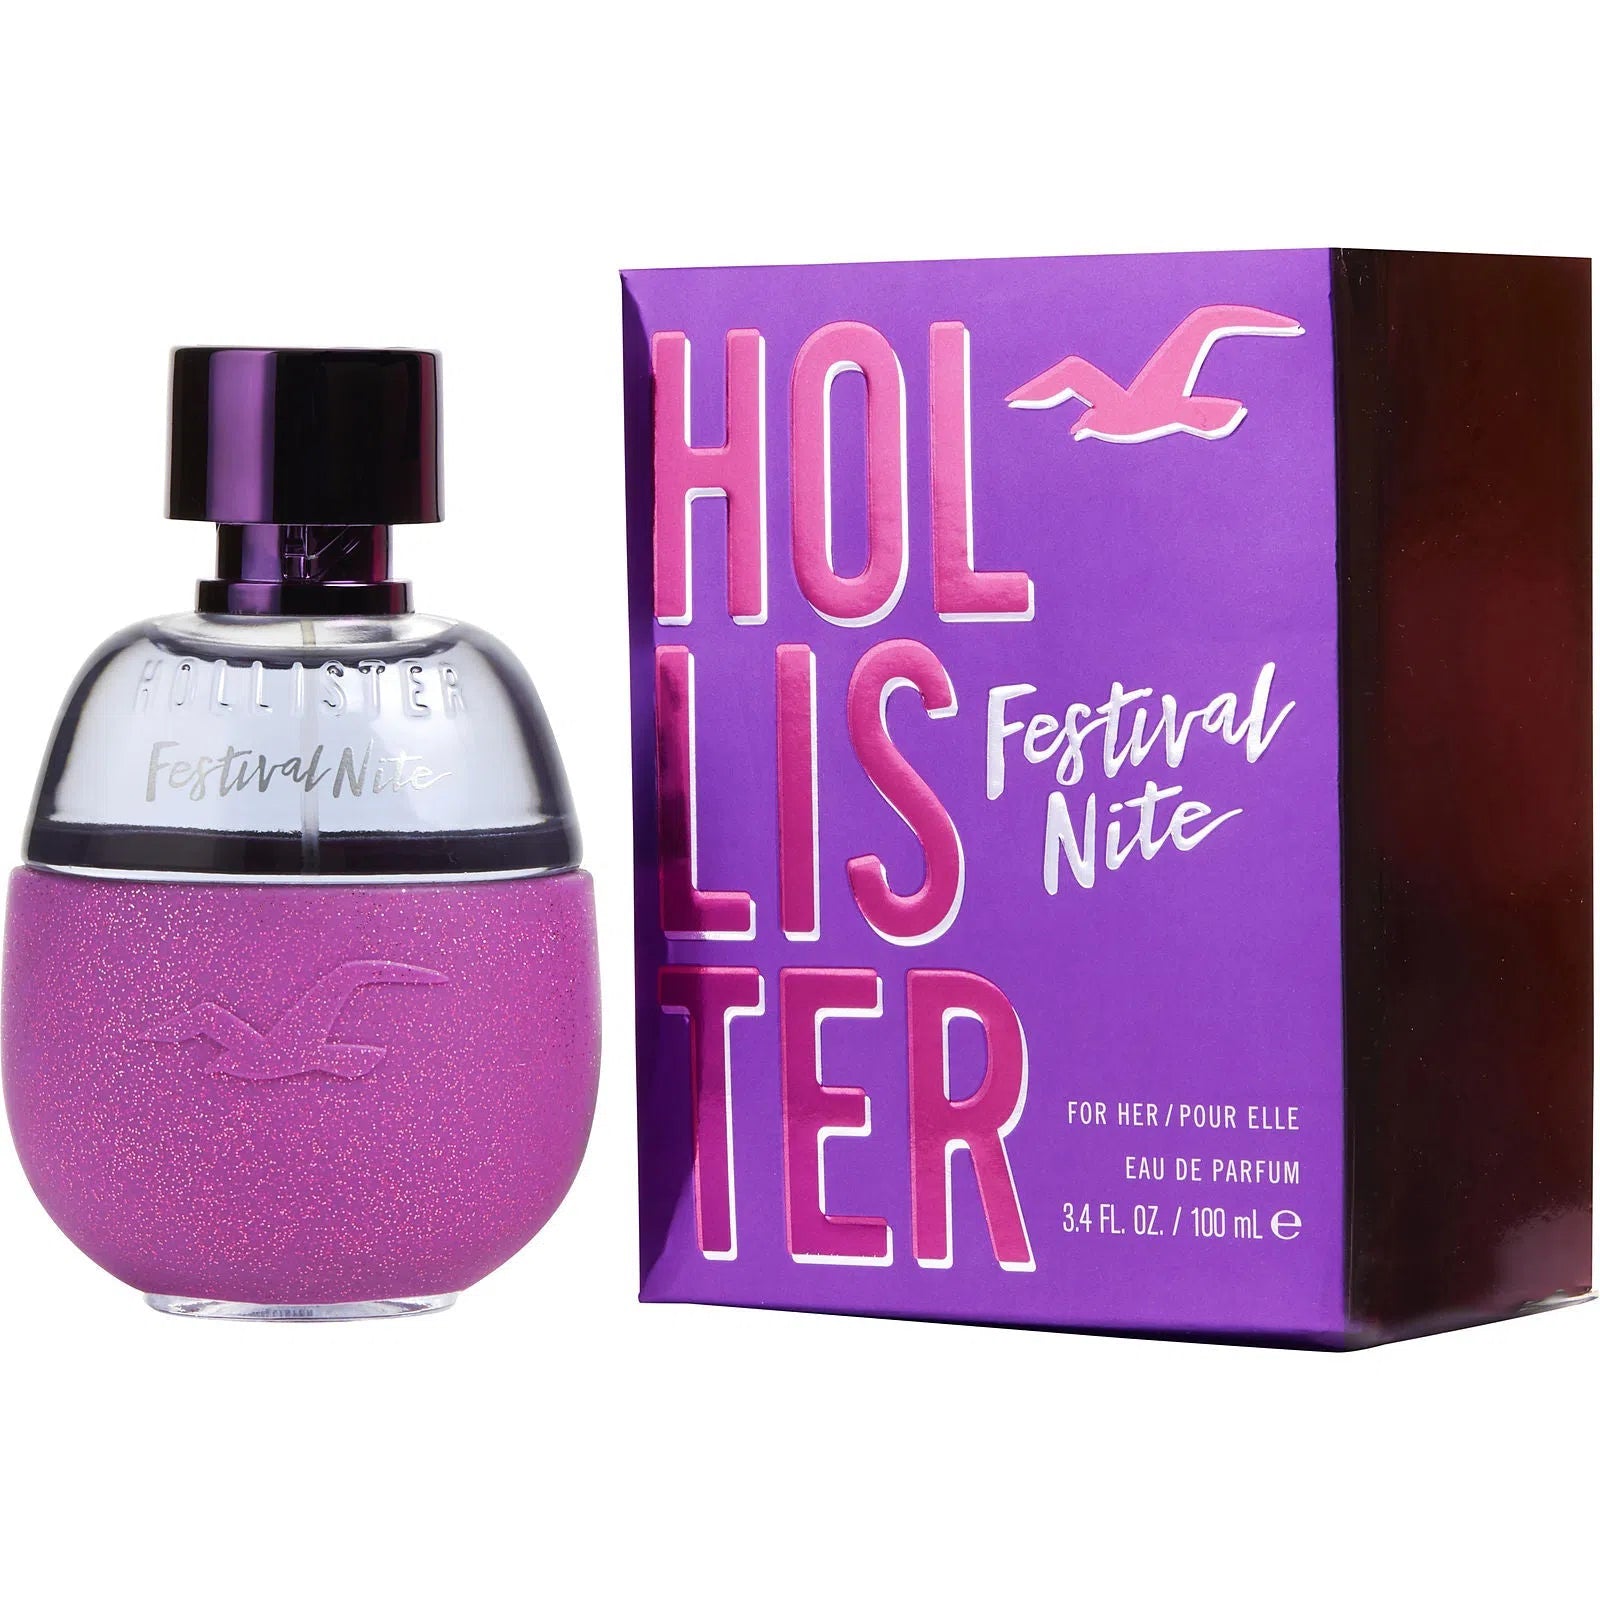 Perfume Hollister Festival Nite EDP (W) / 100 ml - 085715268112- Prive Perfumes Honduras